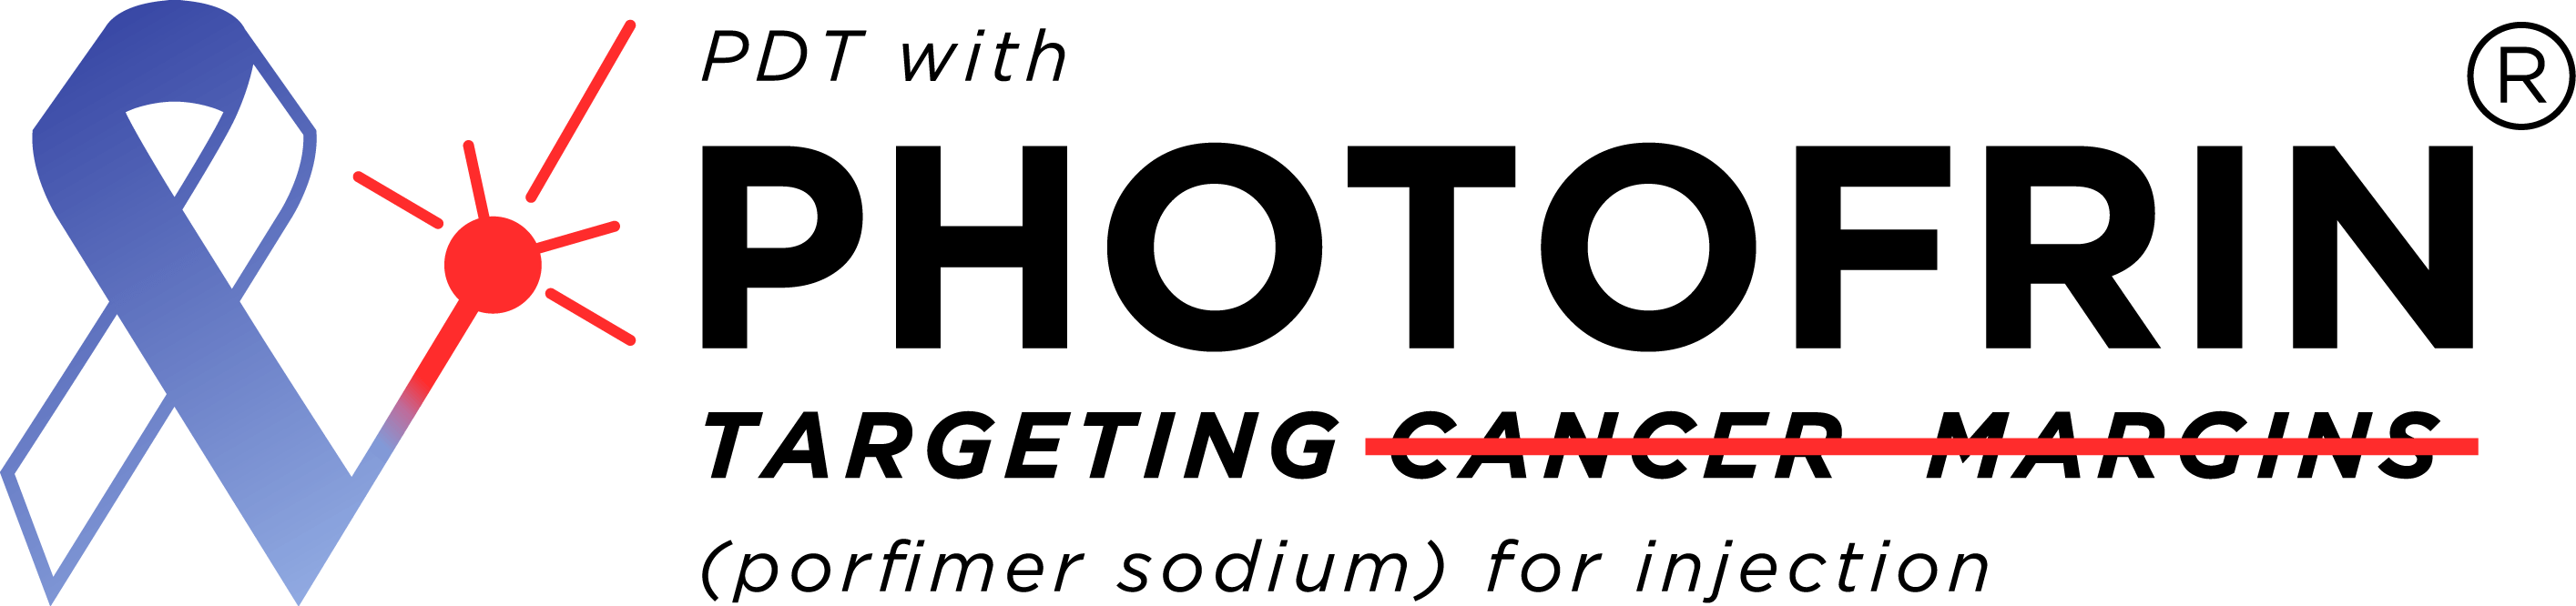 Photofrin logo